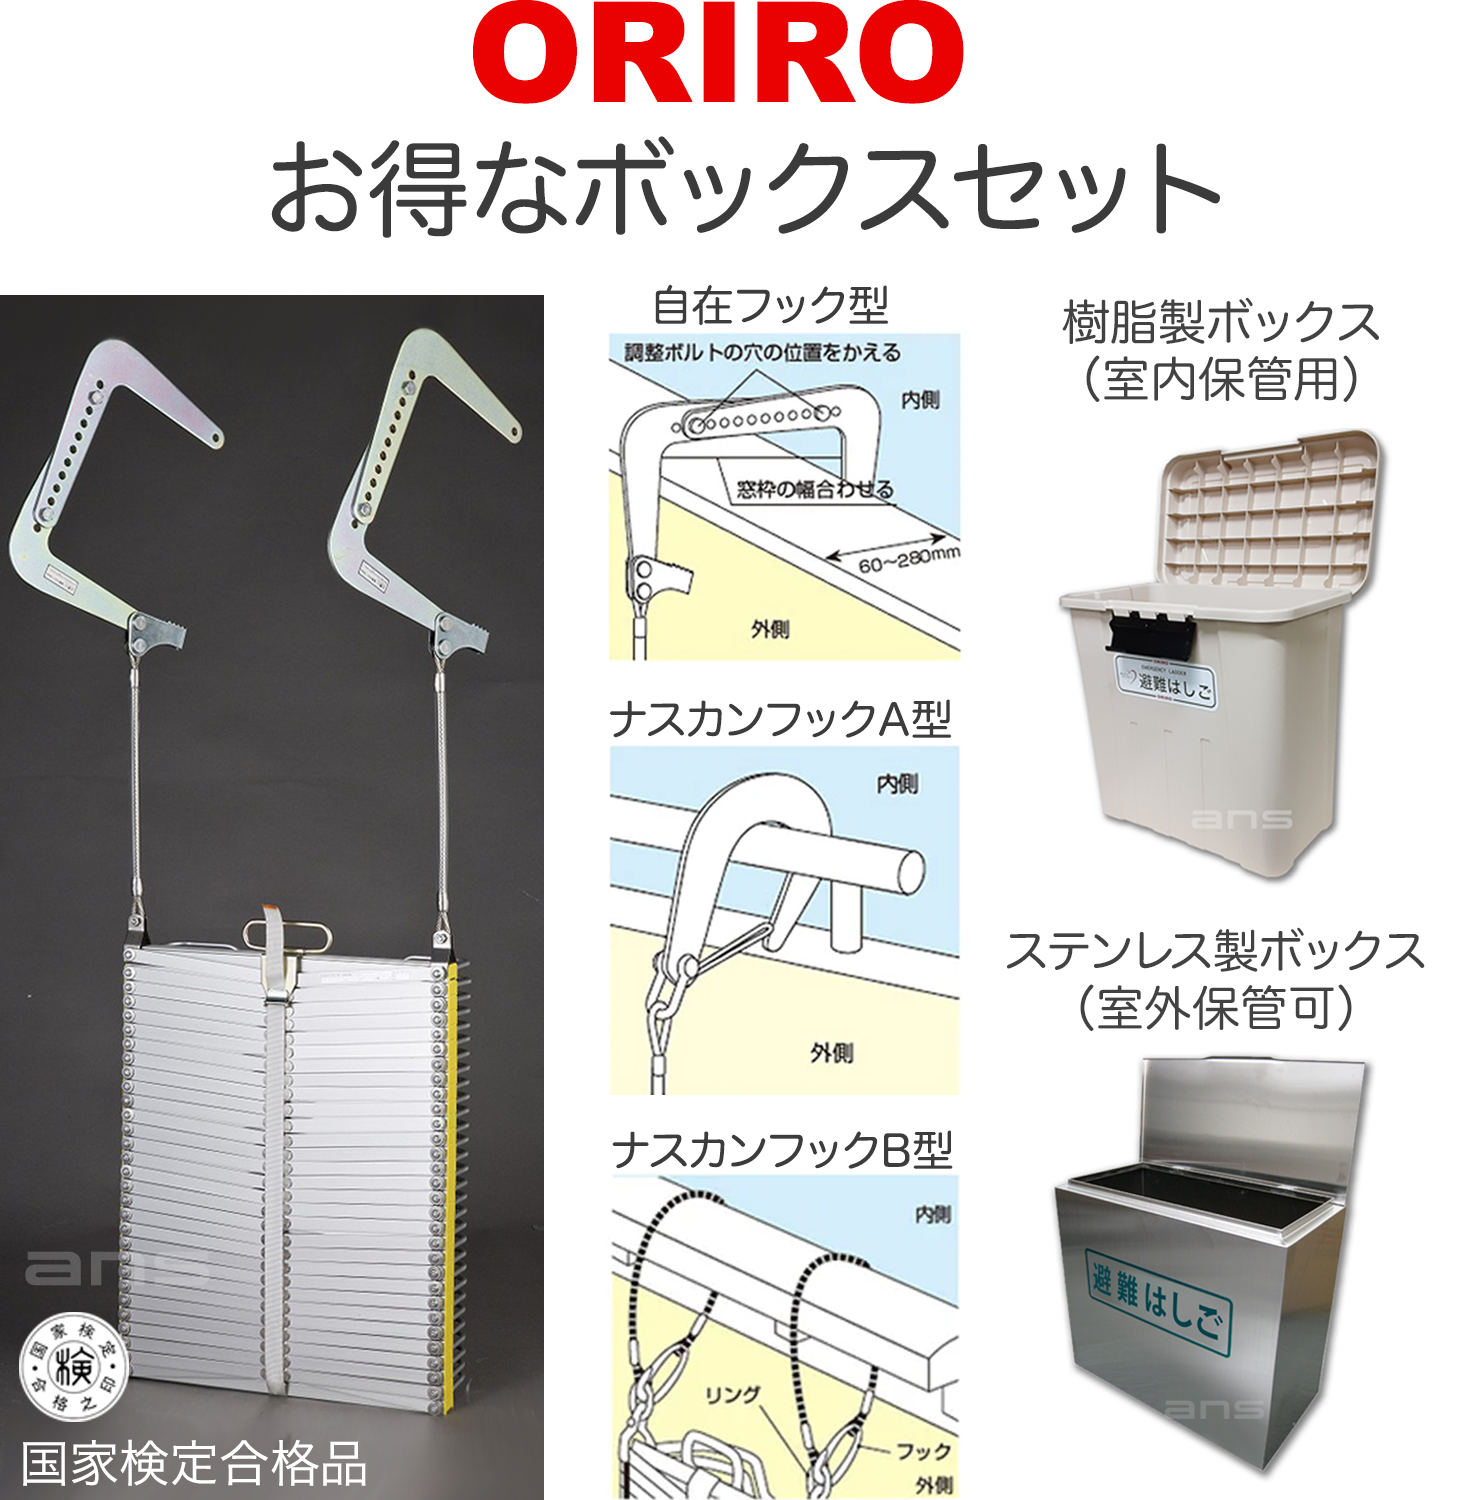 お得なボックスセット。ORIROアルミ製避難はしご 10型 + 収納ボックス。国家検定合格品。設置可能範囲の高さ：自在フック10